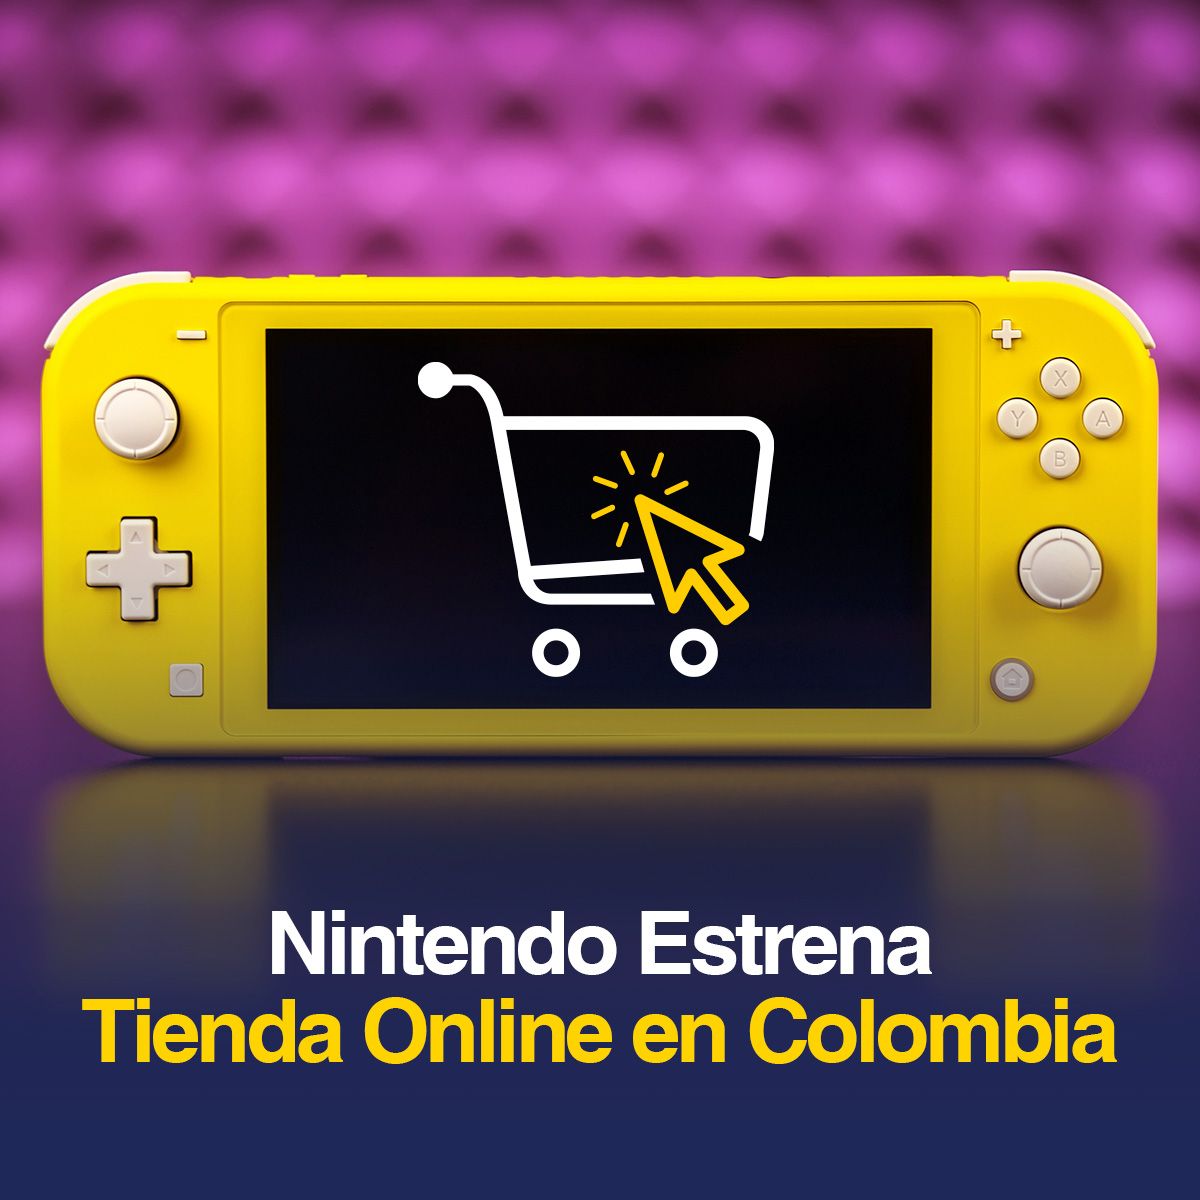 Nintendo Estrena Tienda Online en Colombia